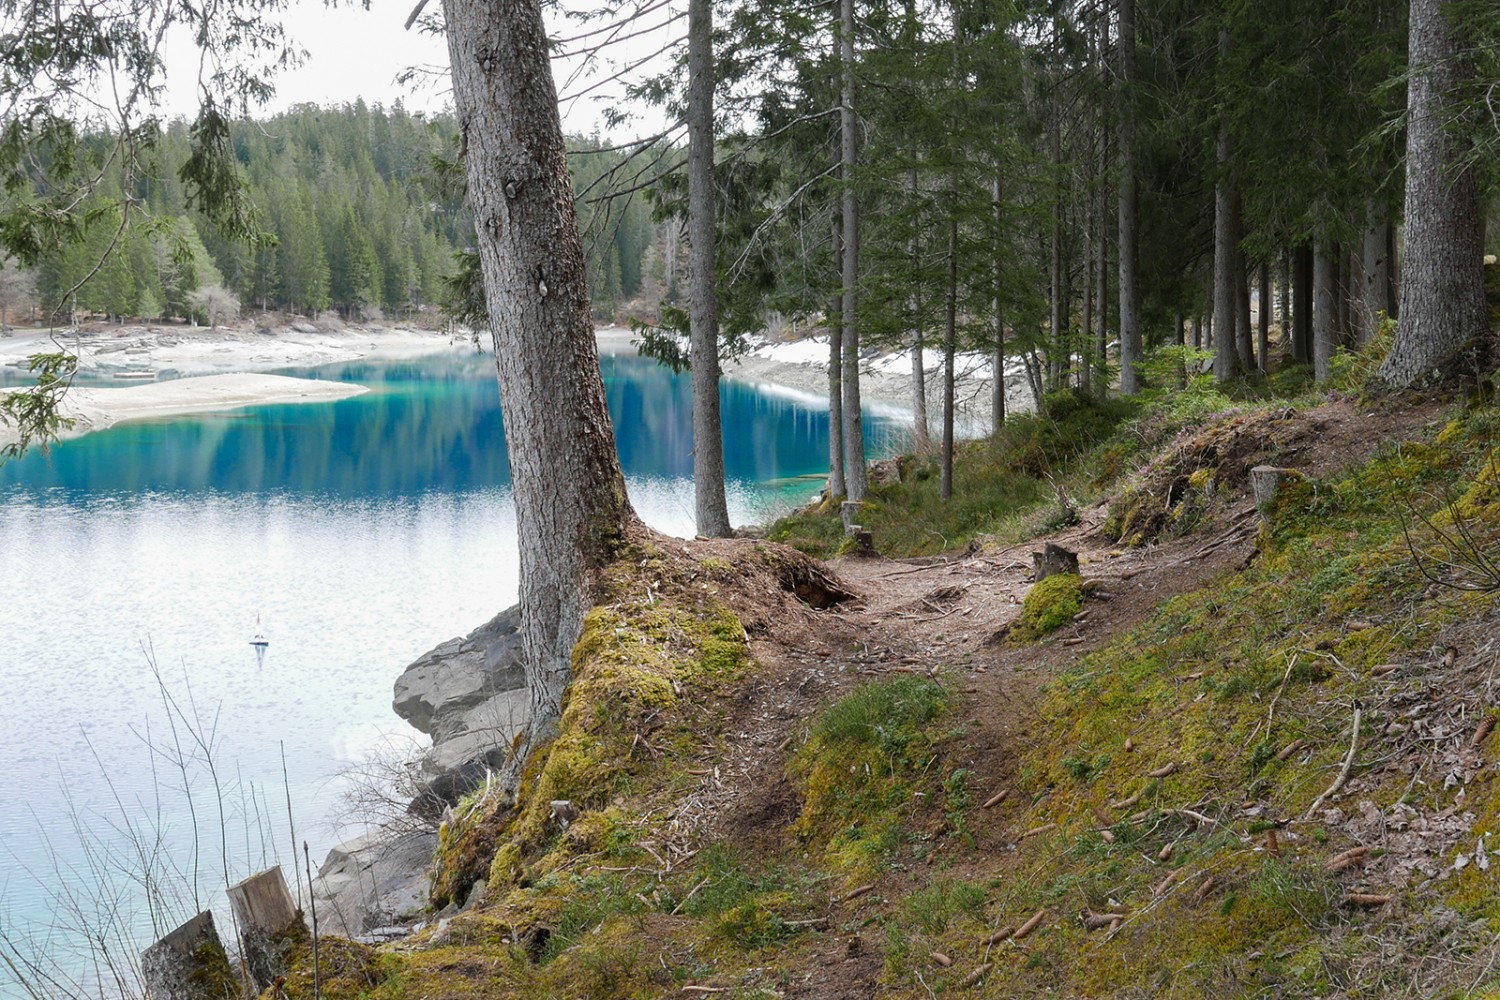 Forêts vert sombre et lacs de montagne turquoise: les teintes contrastées de la randonnée. Photos: Susanne Frauenfelder